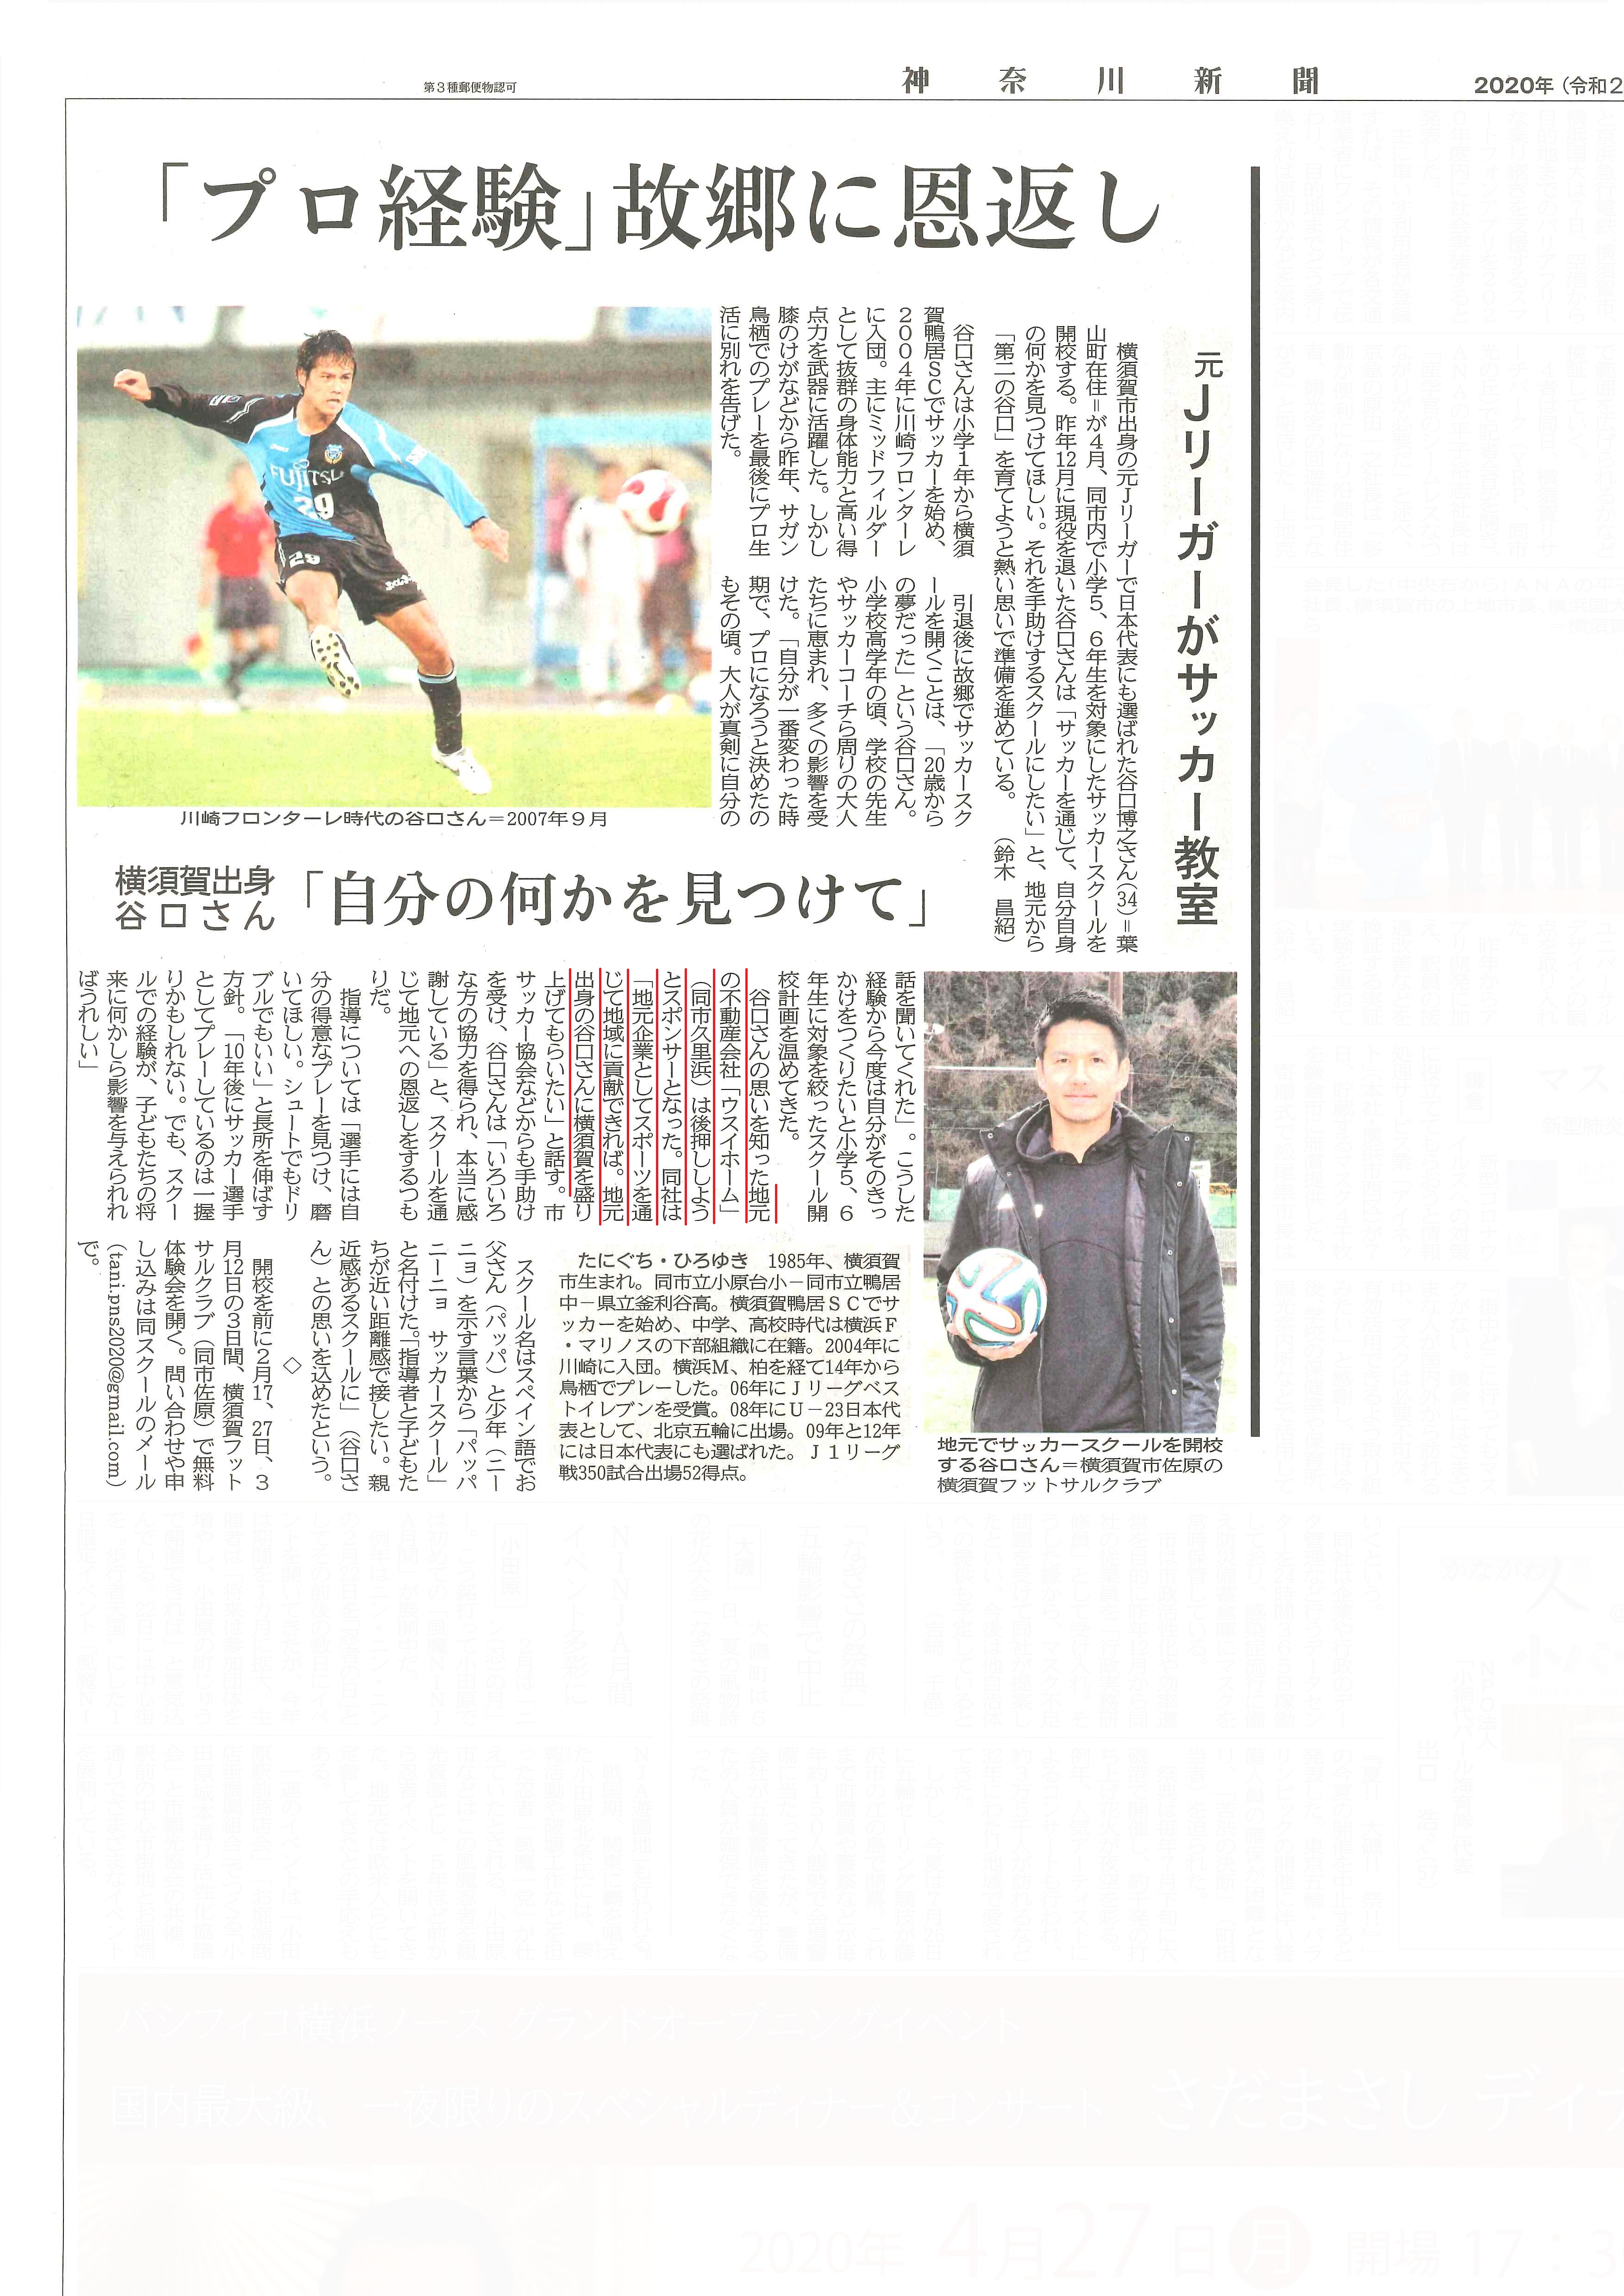 2020.02.08_神奈川新聞横須賀面_サッカースクール支援 (1)